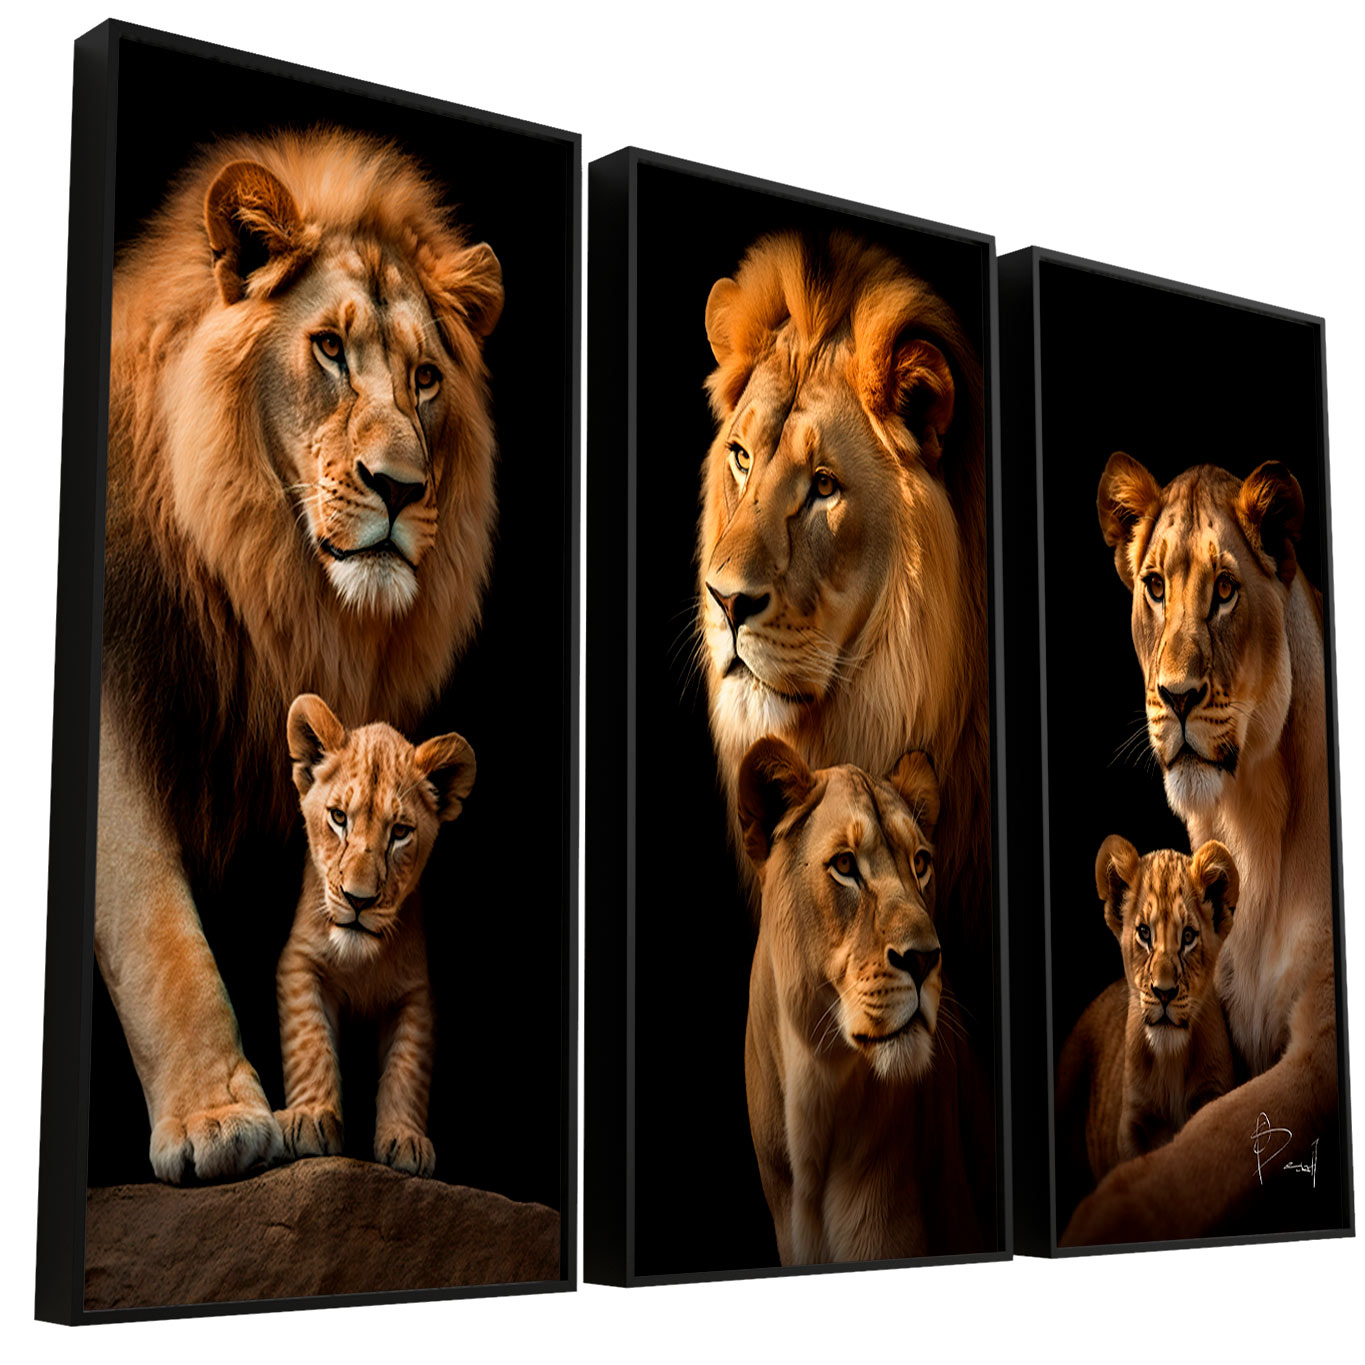 Quadro Retratos da Família de Leões - 2 Filhotes 3 Peças